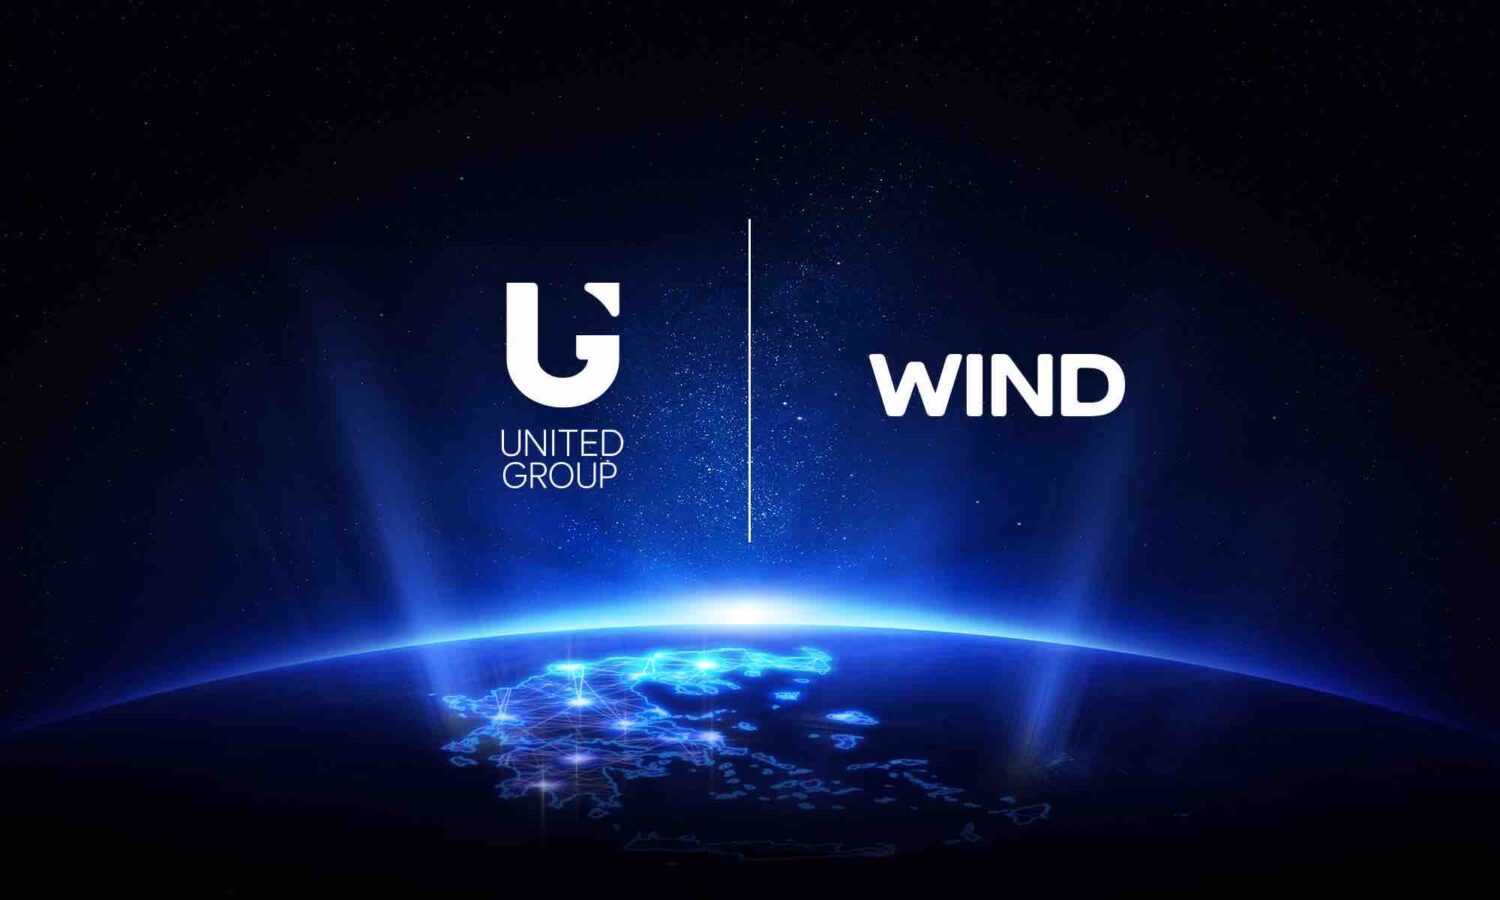 Η United Group αποκτά την Wind με τίμημα 1 δισ. ευρώ